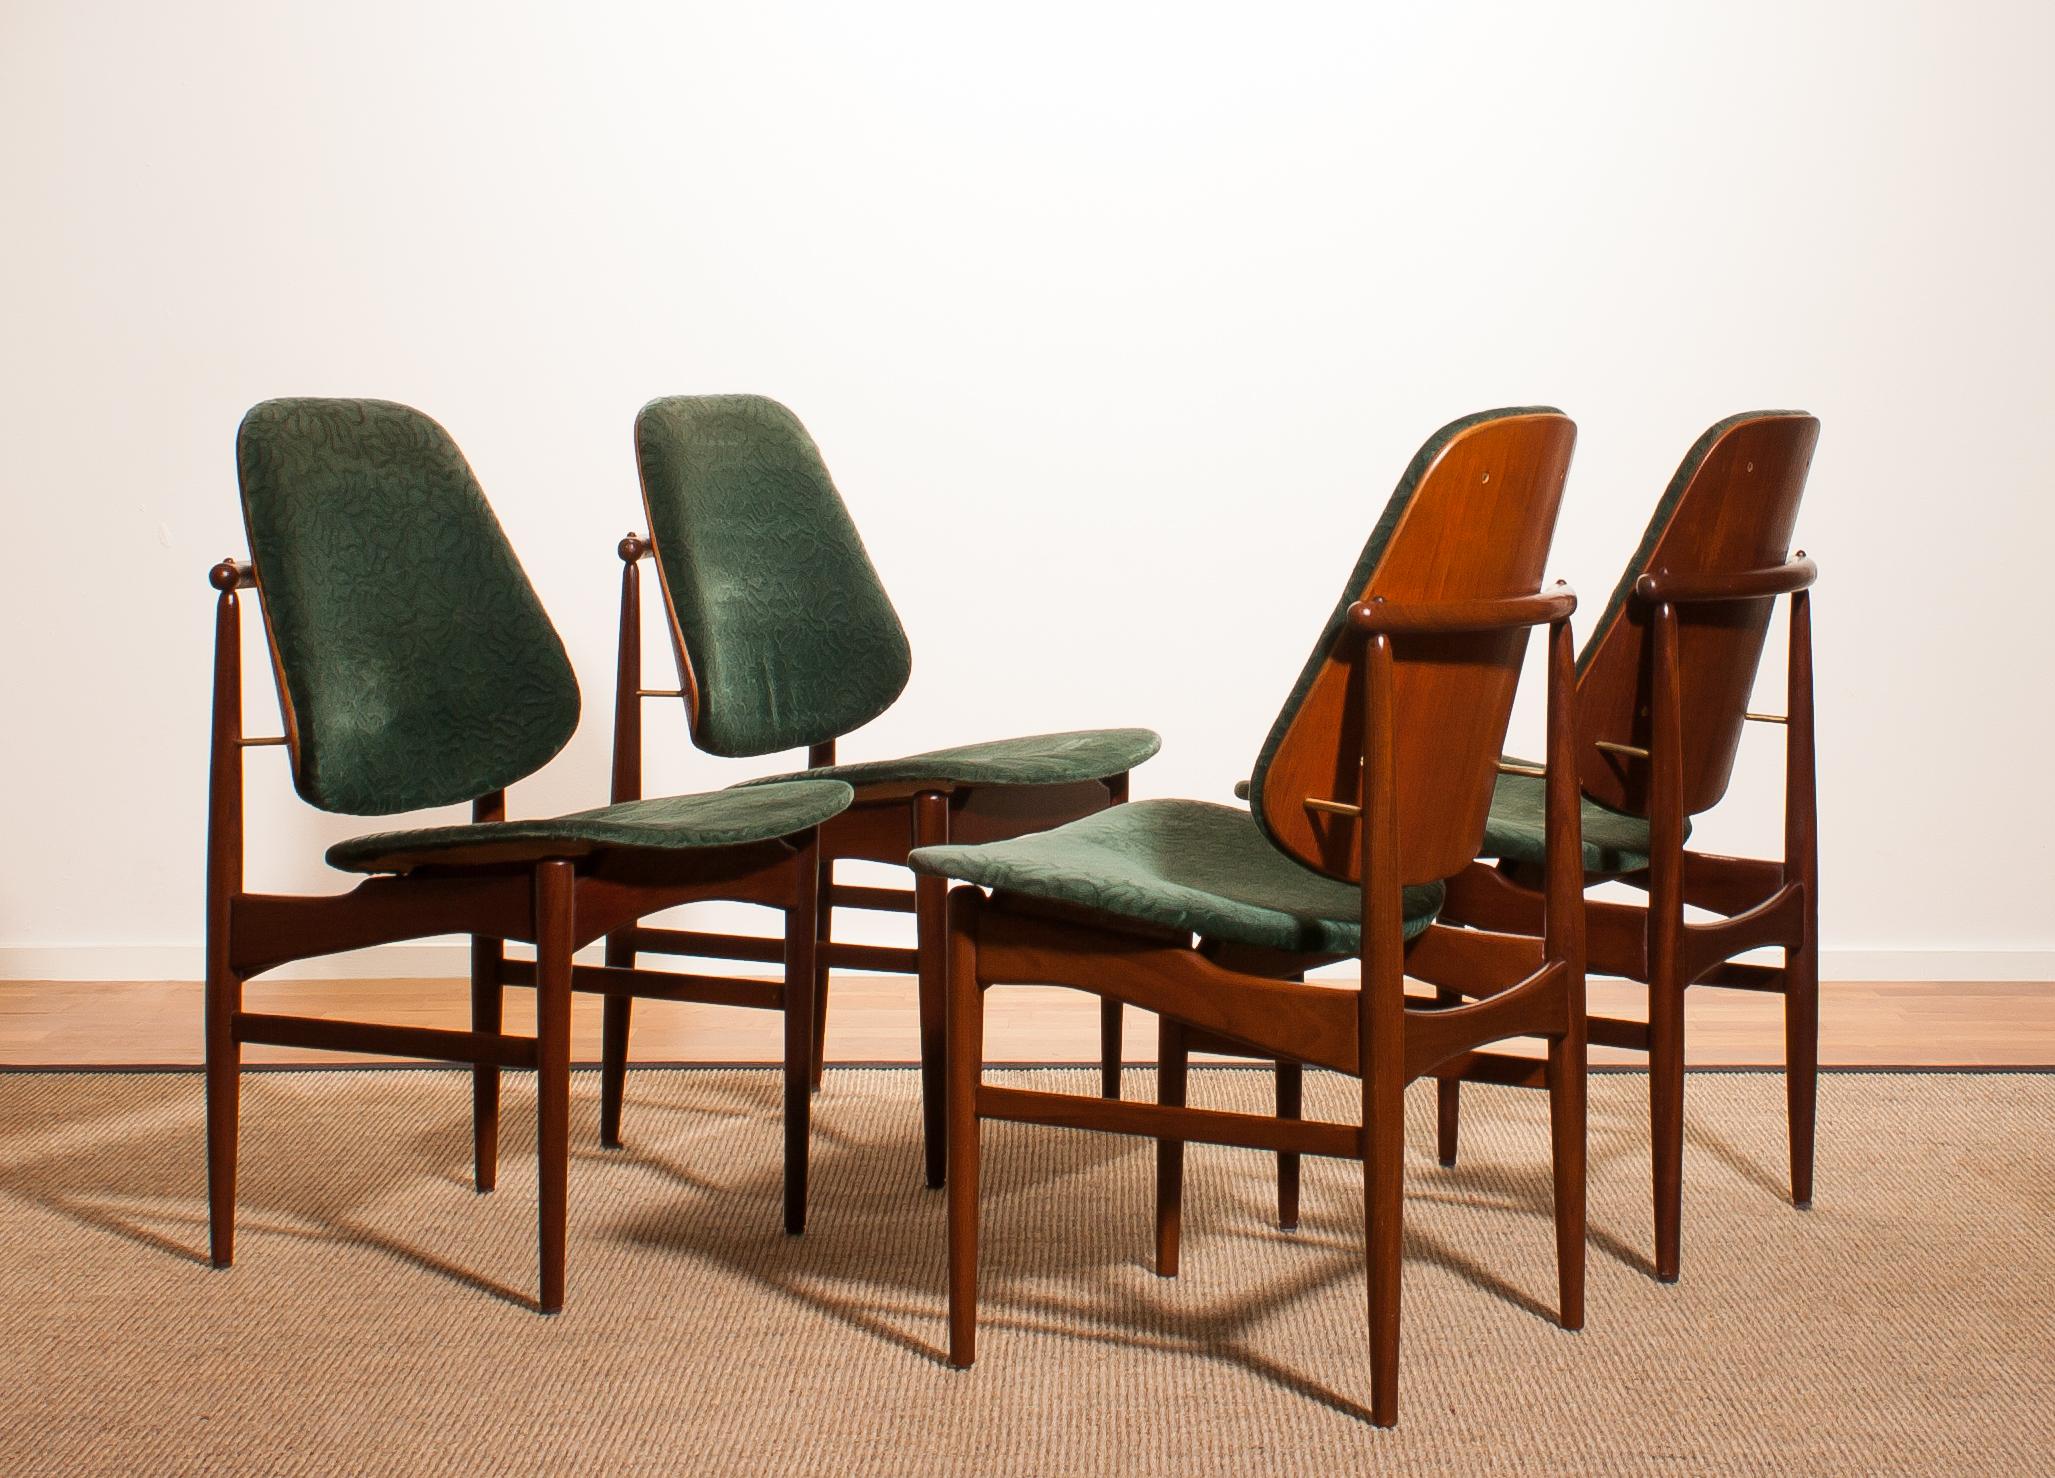 1950s, Set of Four Teak Dining Chairs by Arne Vodder for France & Daverkosen 1